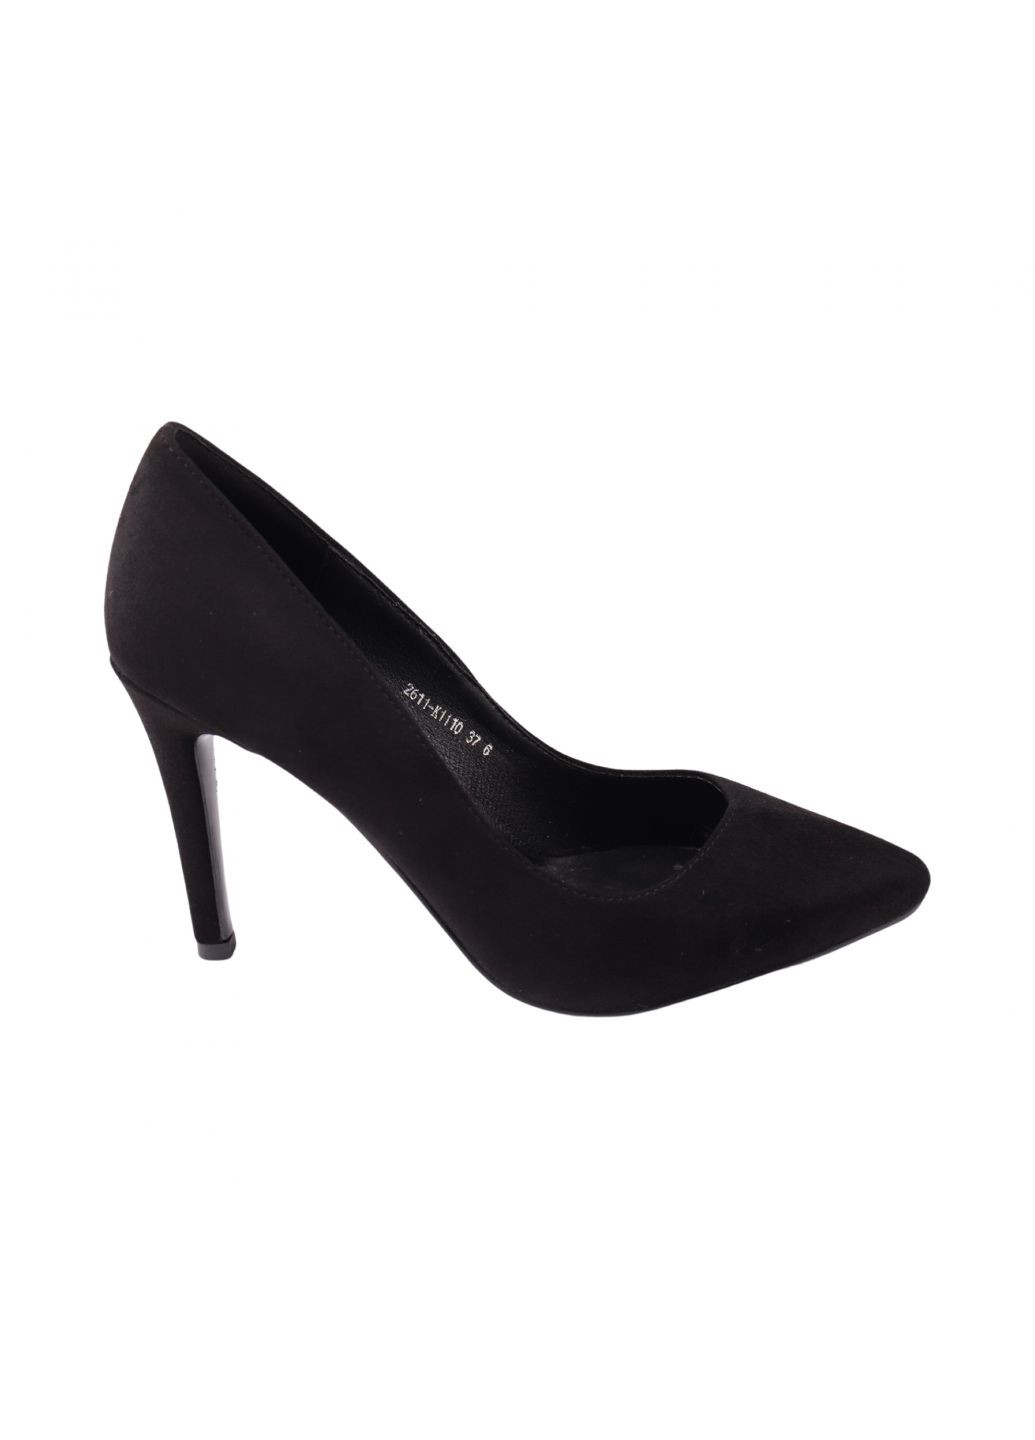 Туфлі жіночі чорні LIICI 292-24dt (278019382)